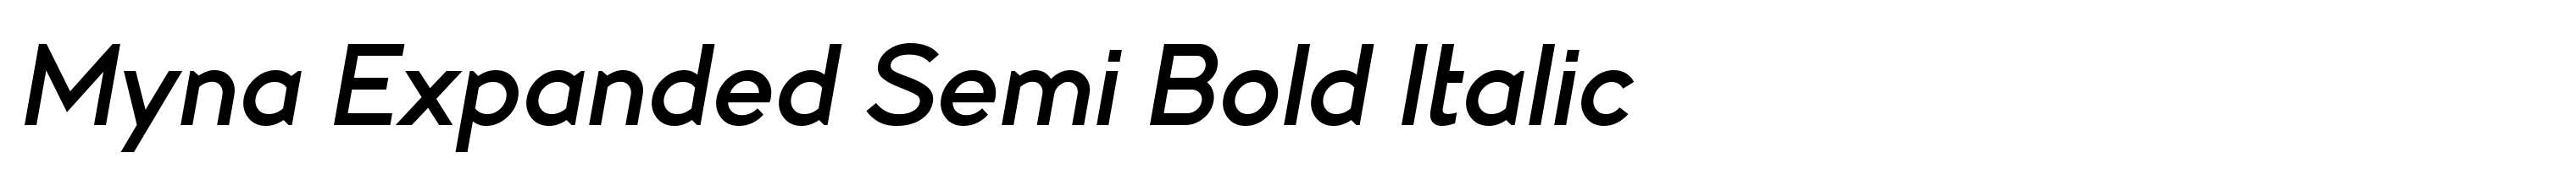 Myna Expanded Semi Bold Italic